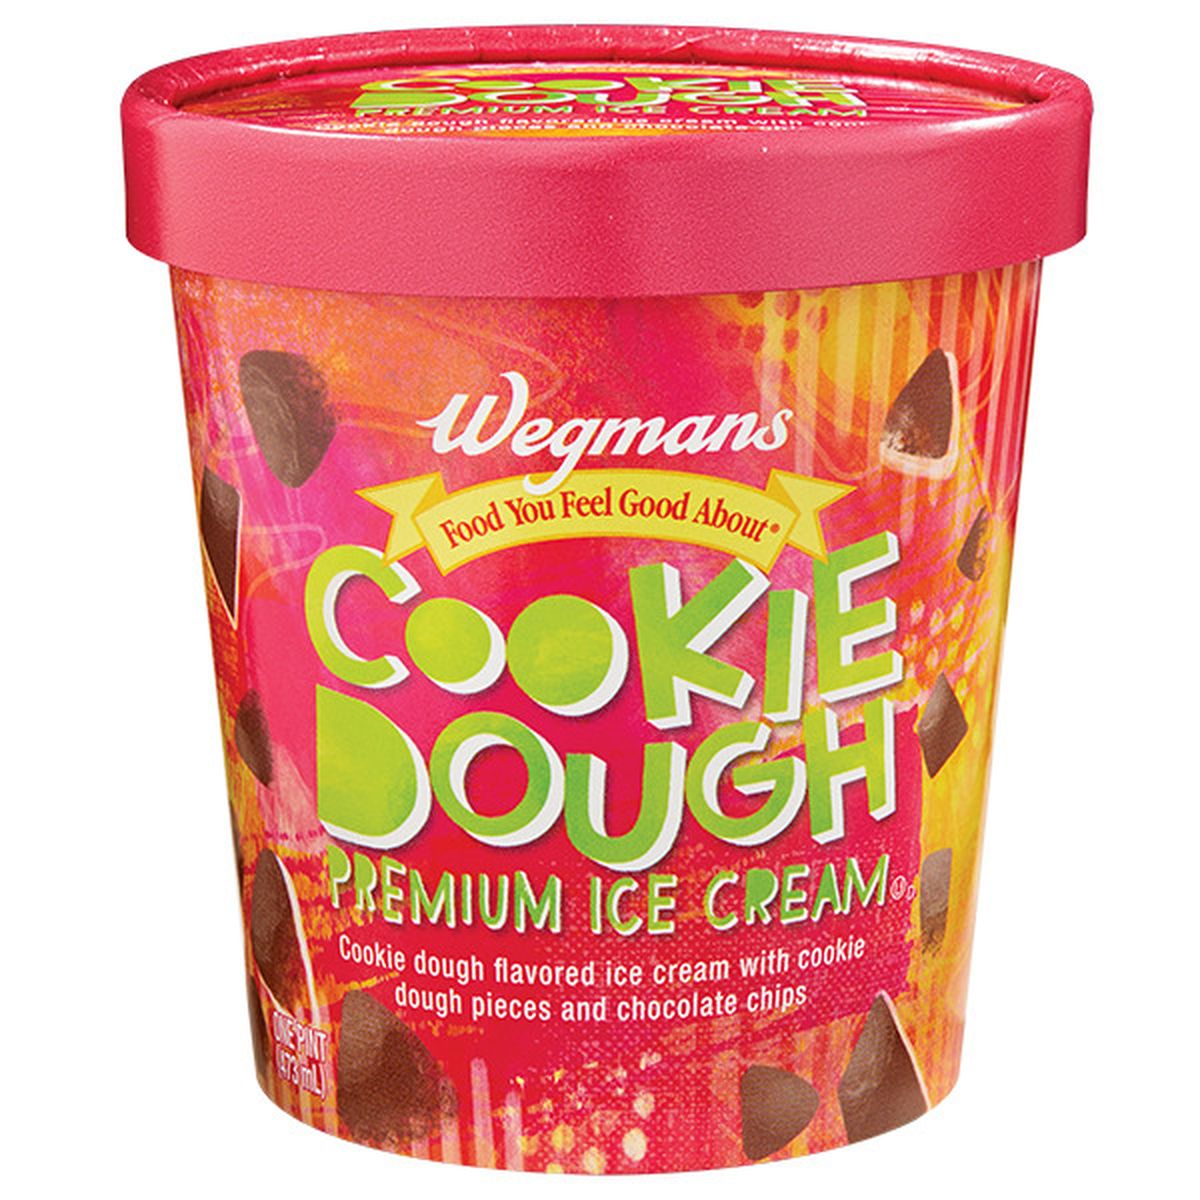 Calories in Wegmans Cookie Dough Premium Ice Cream